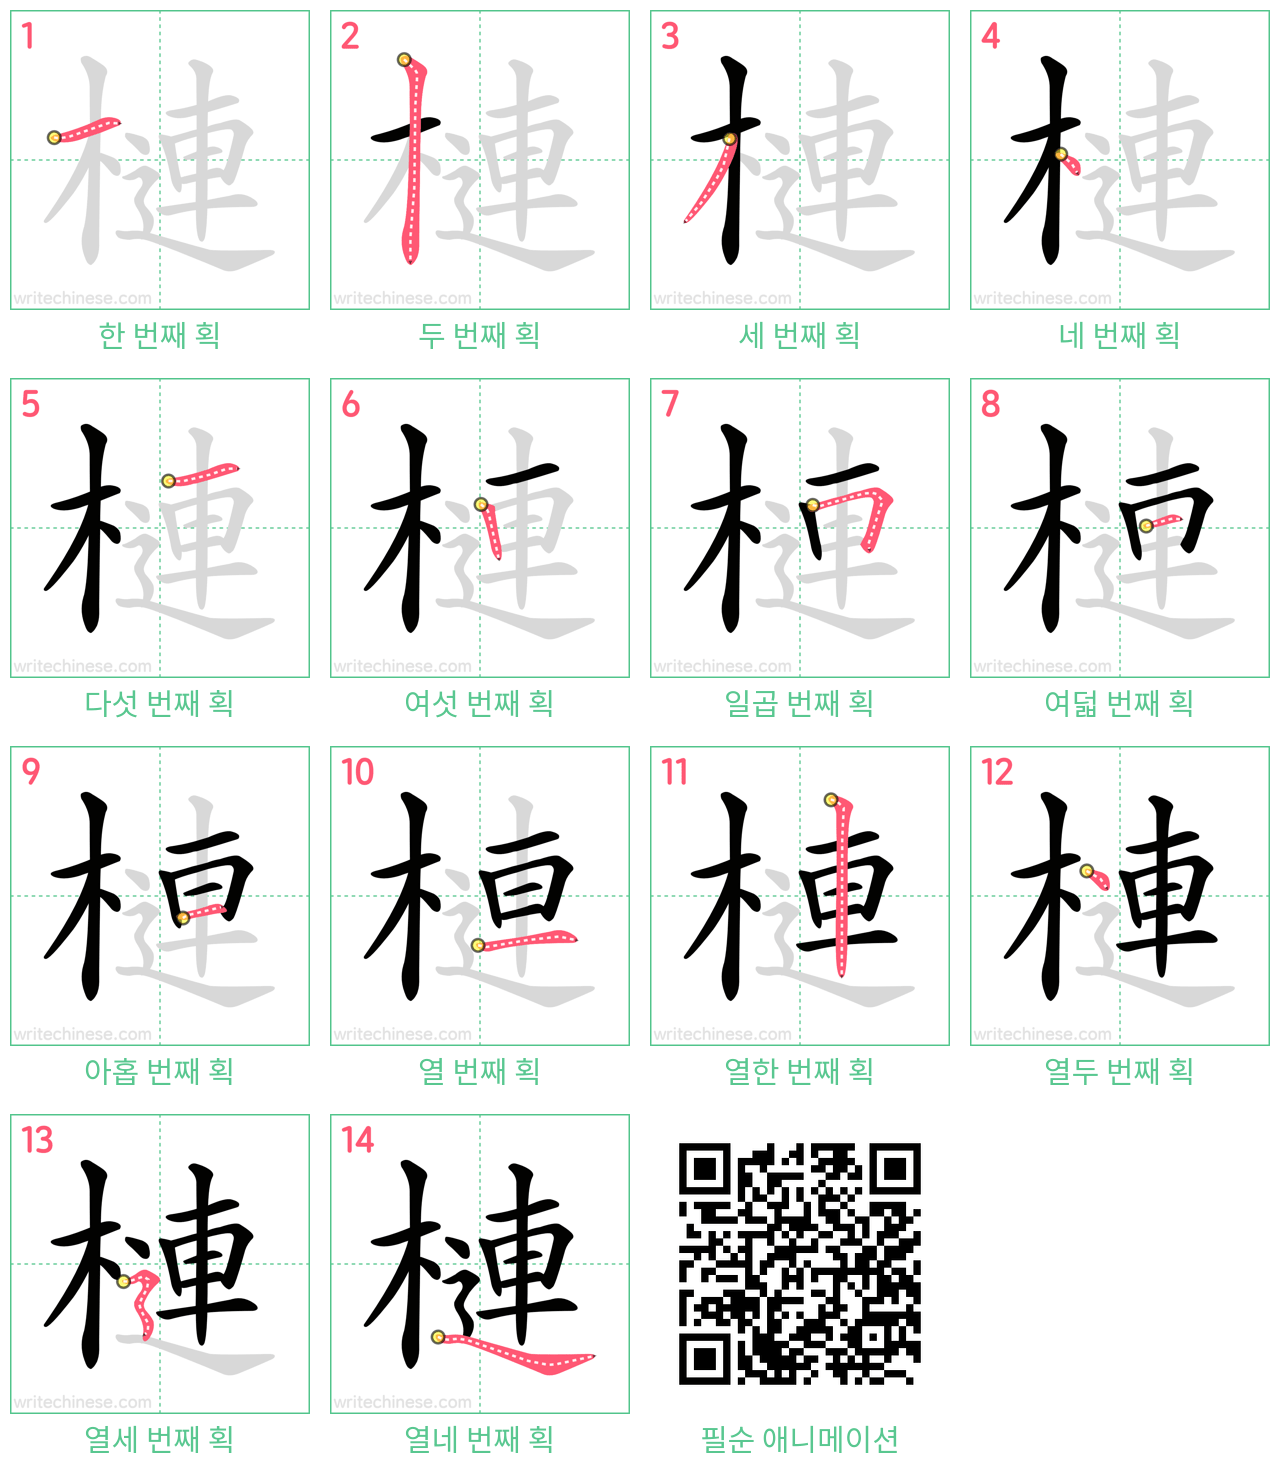 槤 step-by-step stroke order diagrams